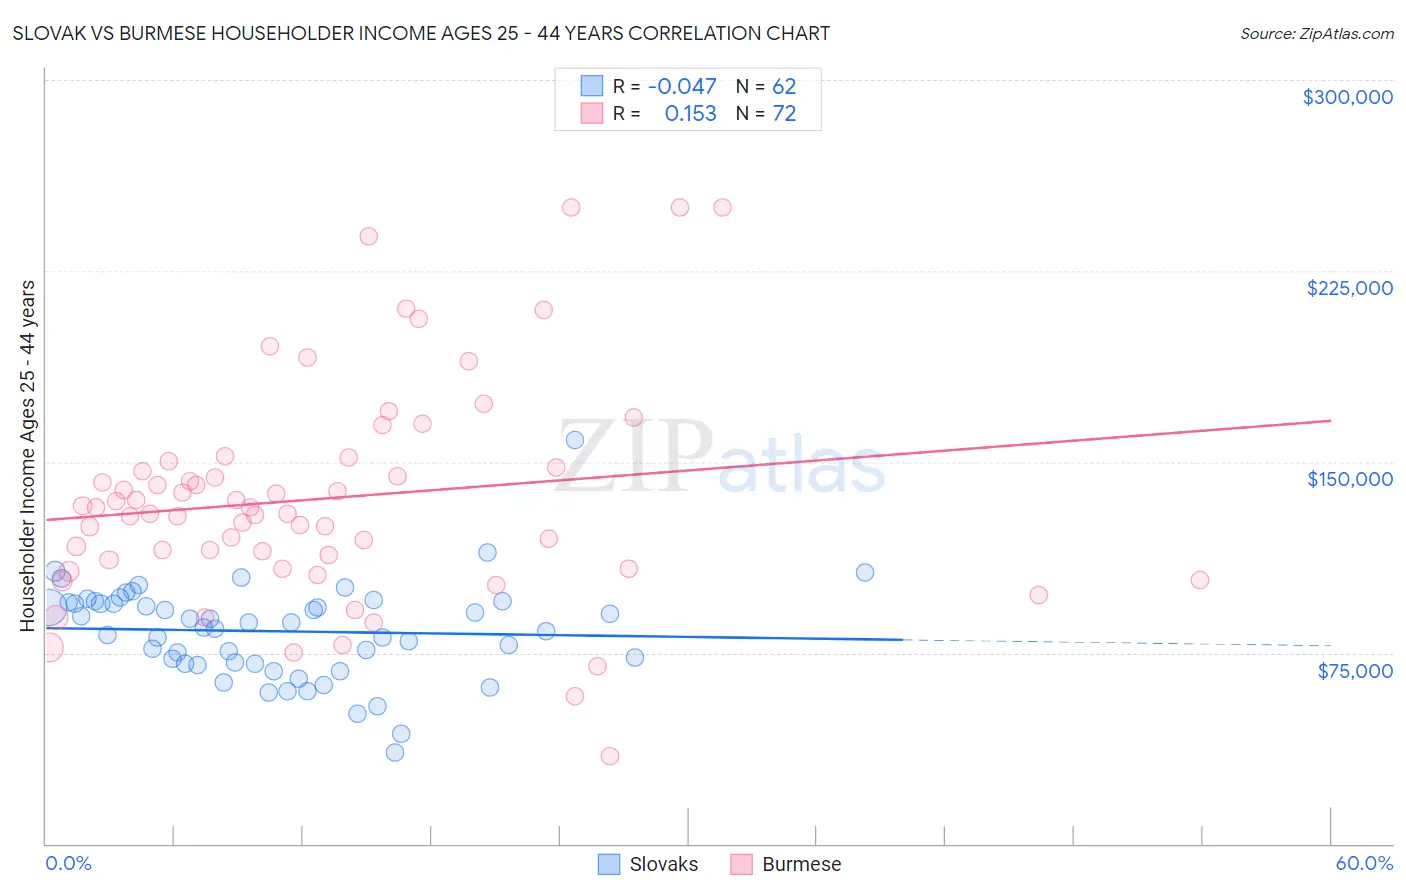 Slovak vs Burmese Householder Income Ages 25 - 44 years